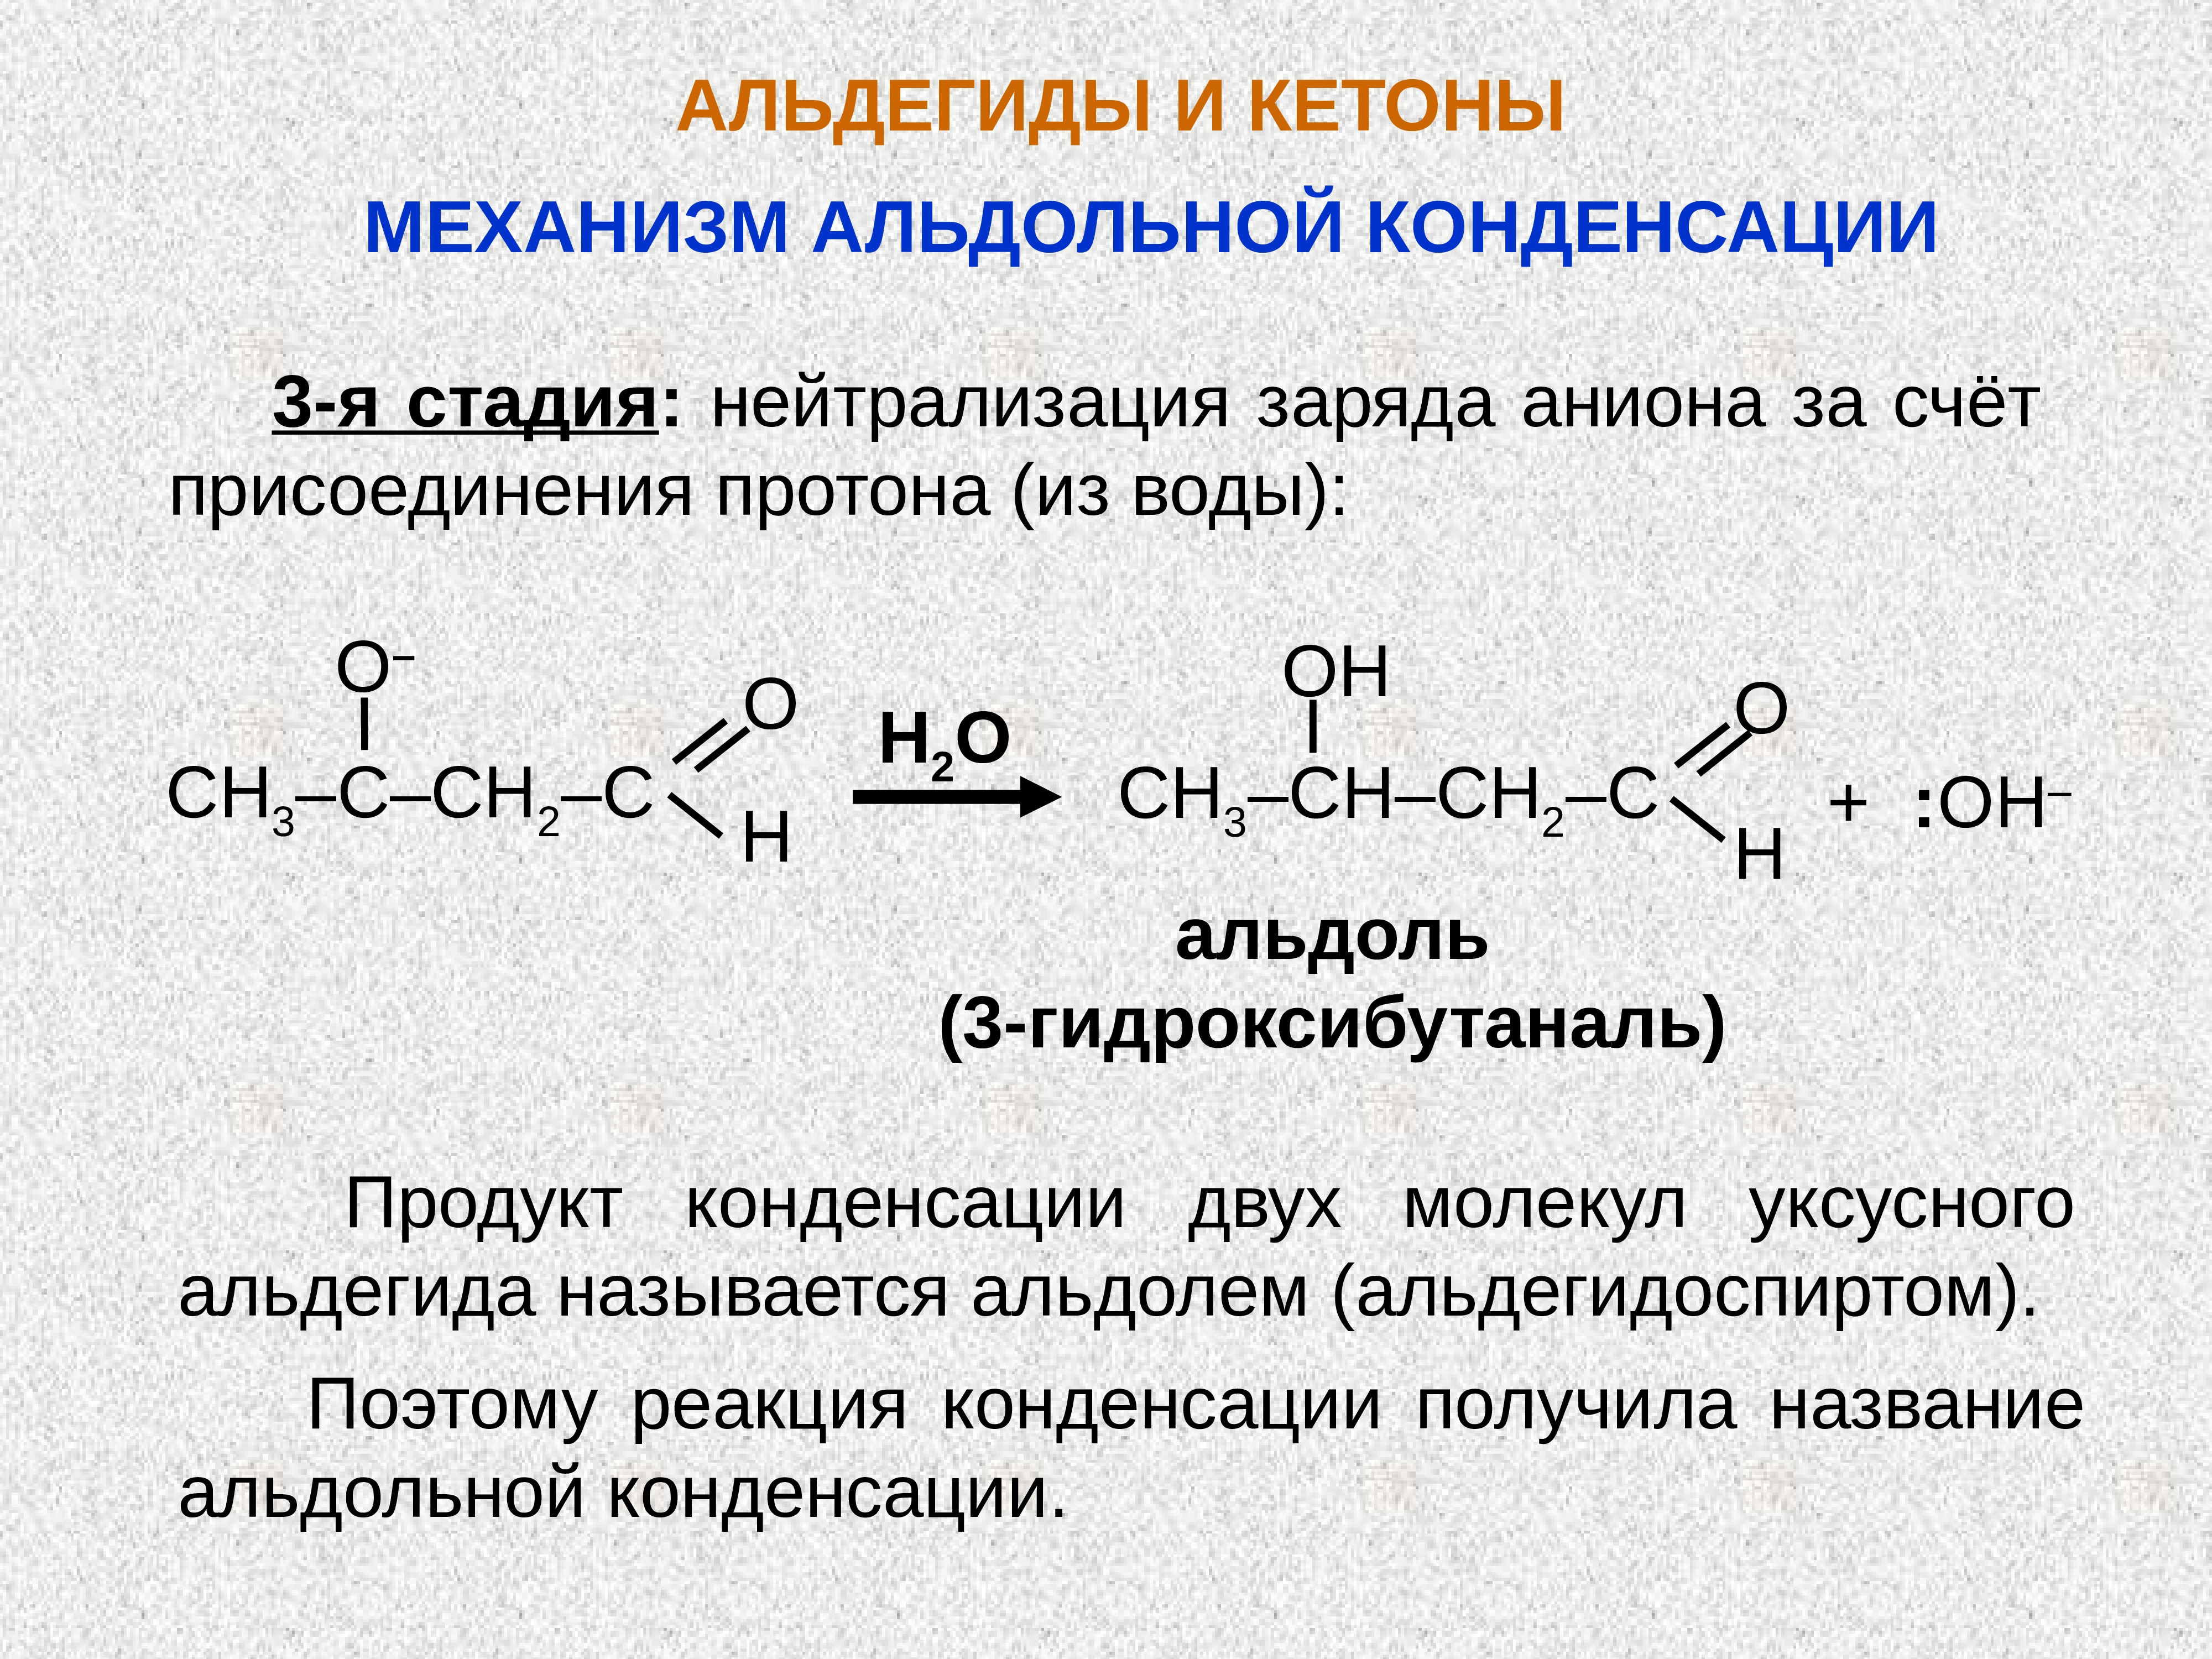 Альдегид с водой реакция. Альдегид плюс альдегид. Ch3 -c в альдегид. Кетоны и альдегиды c8h10o.